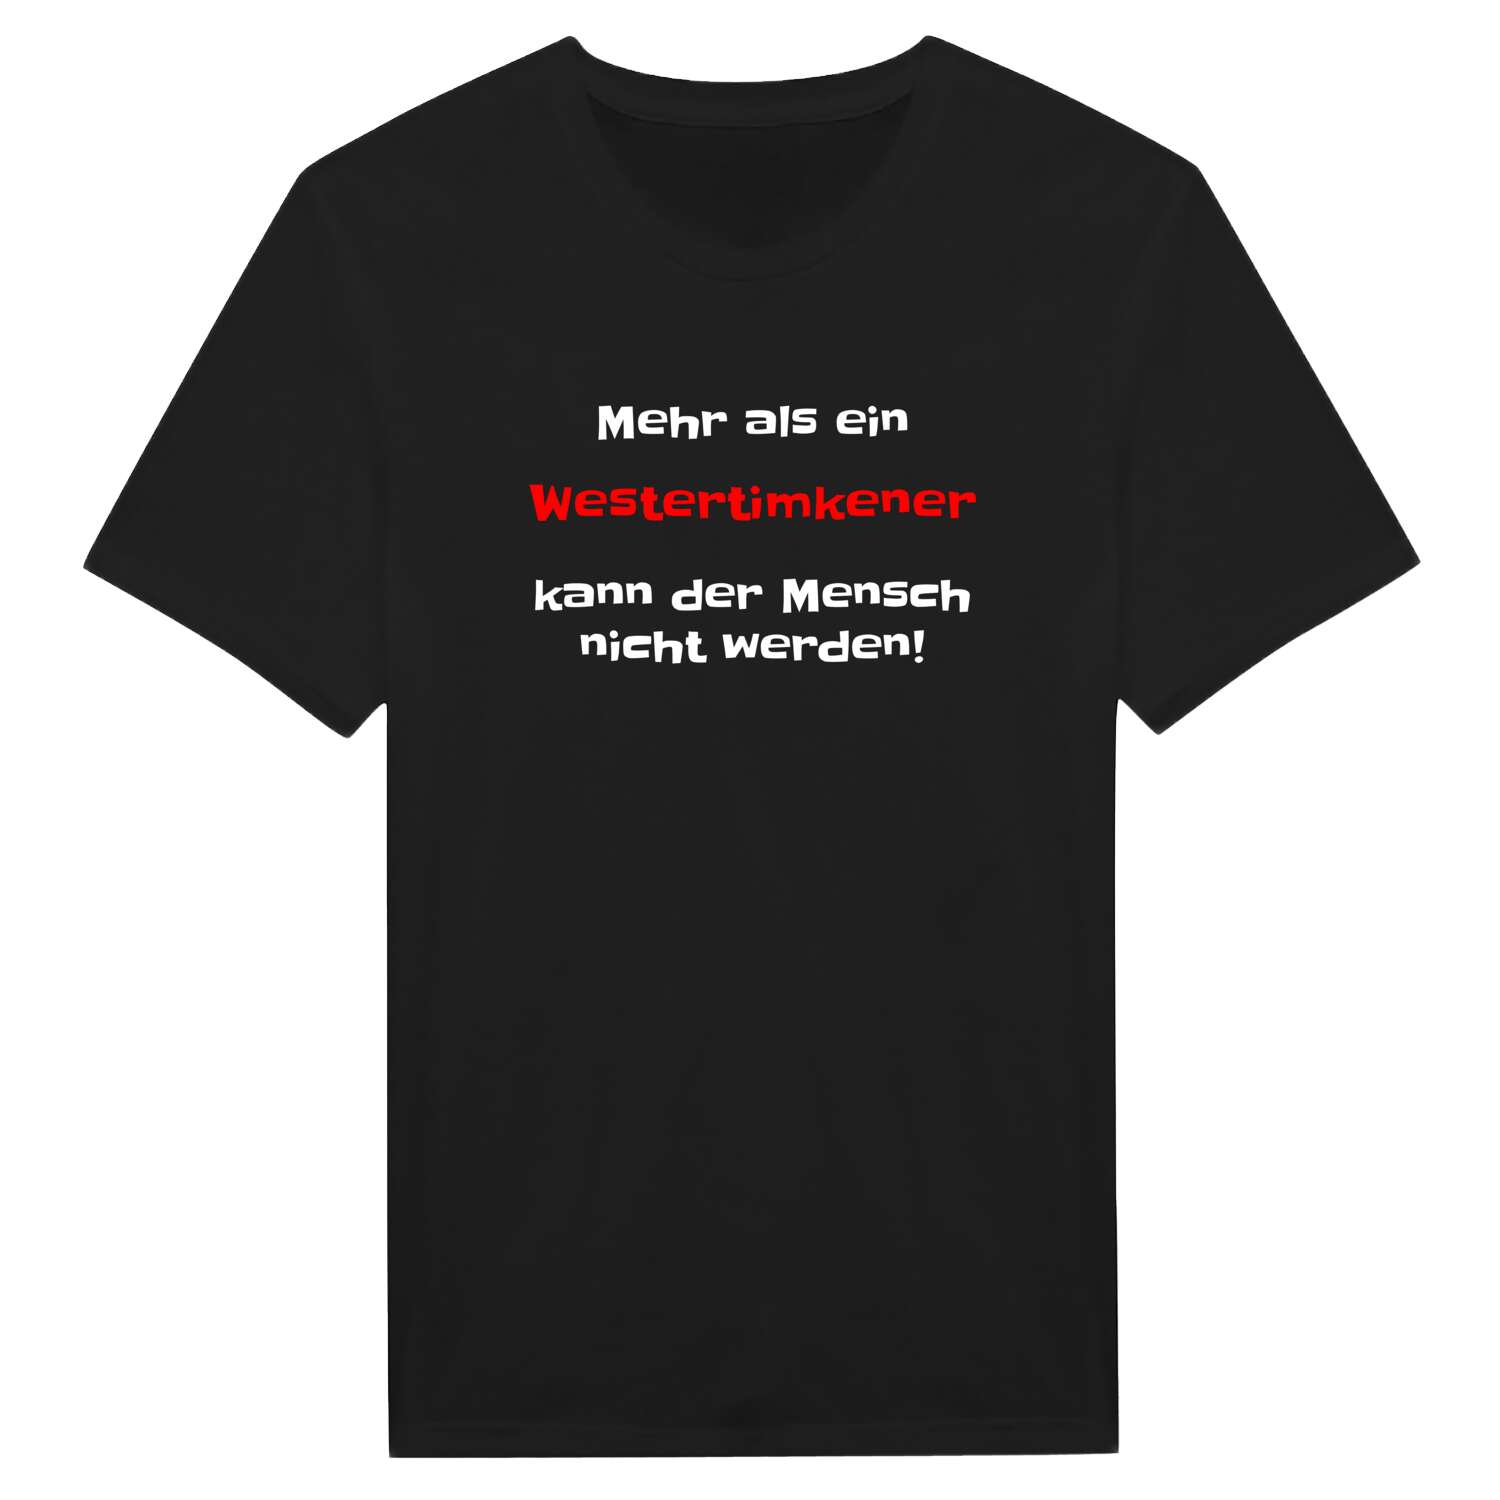 Westertimke T-Shirt »Mehr als ein«